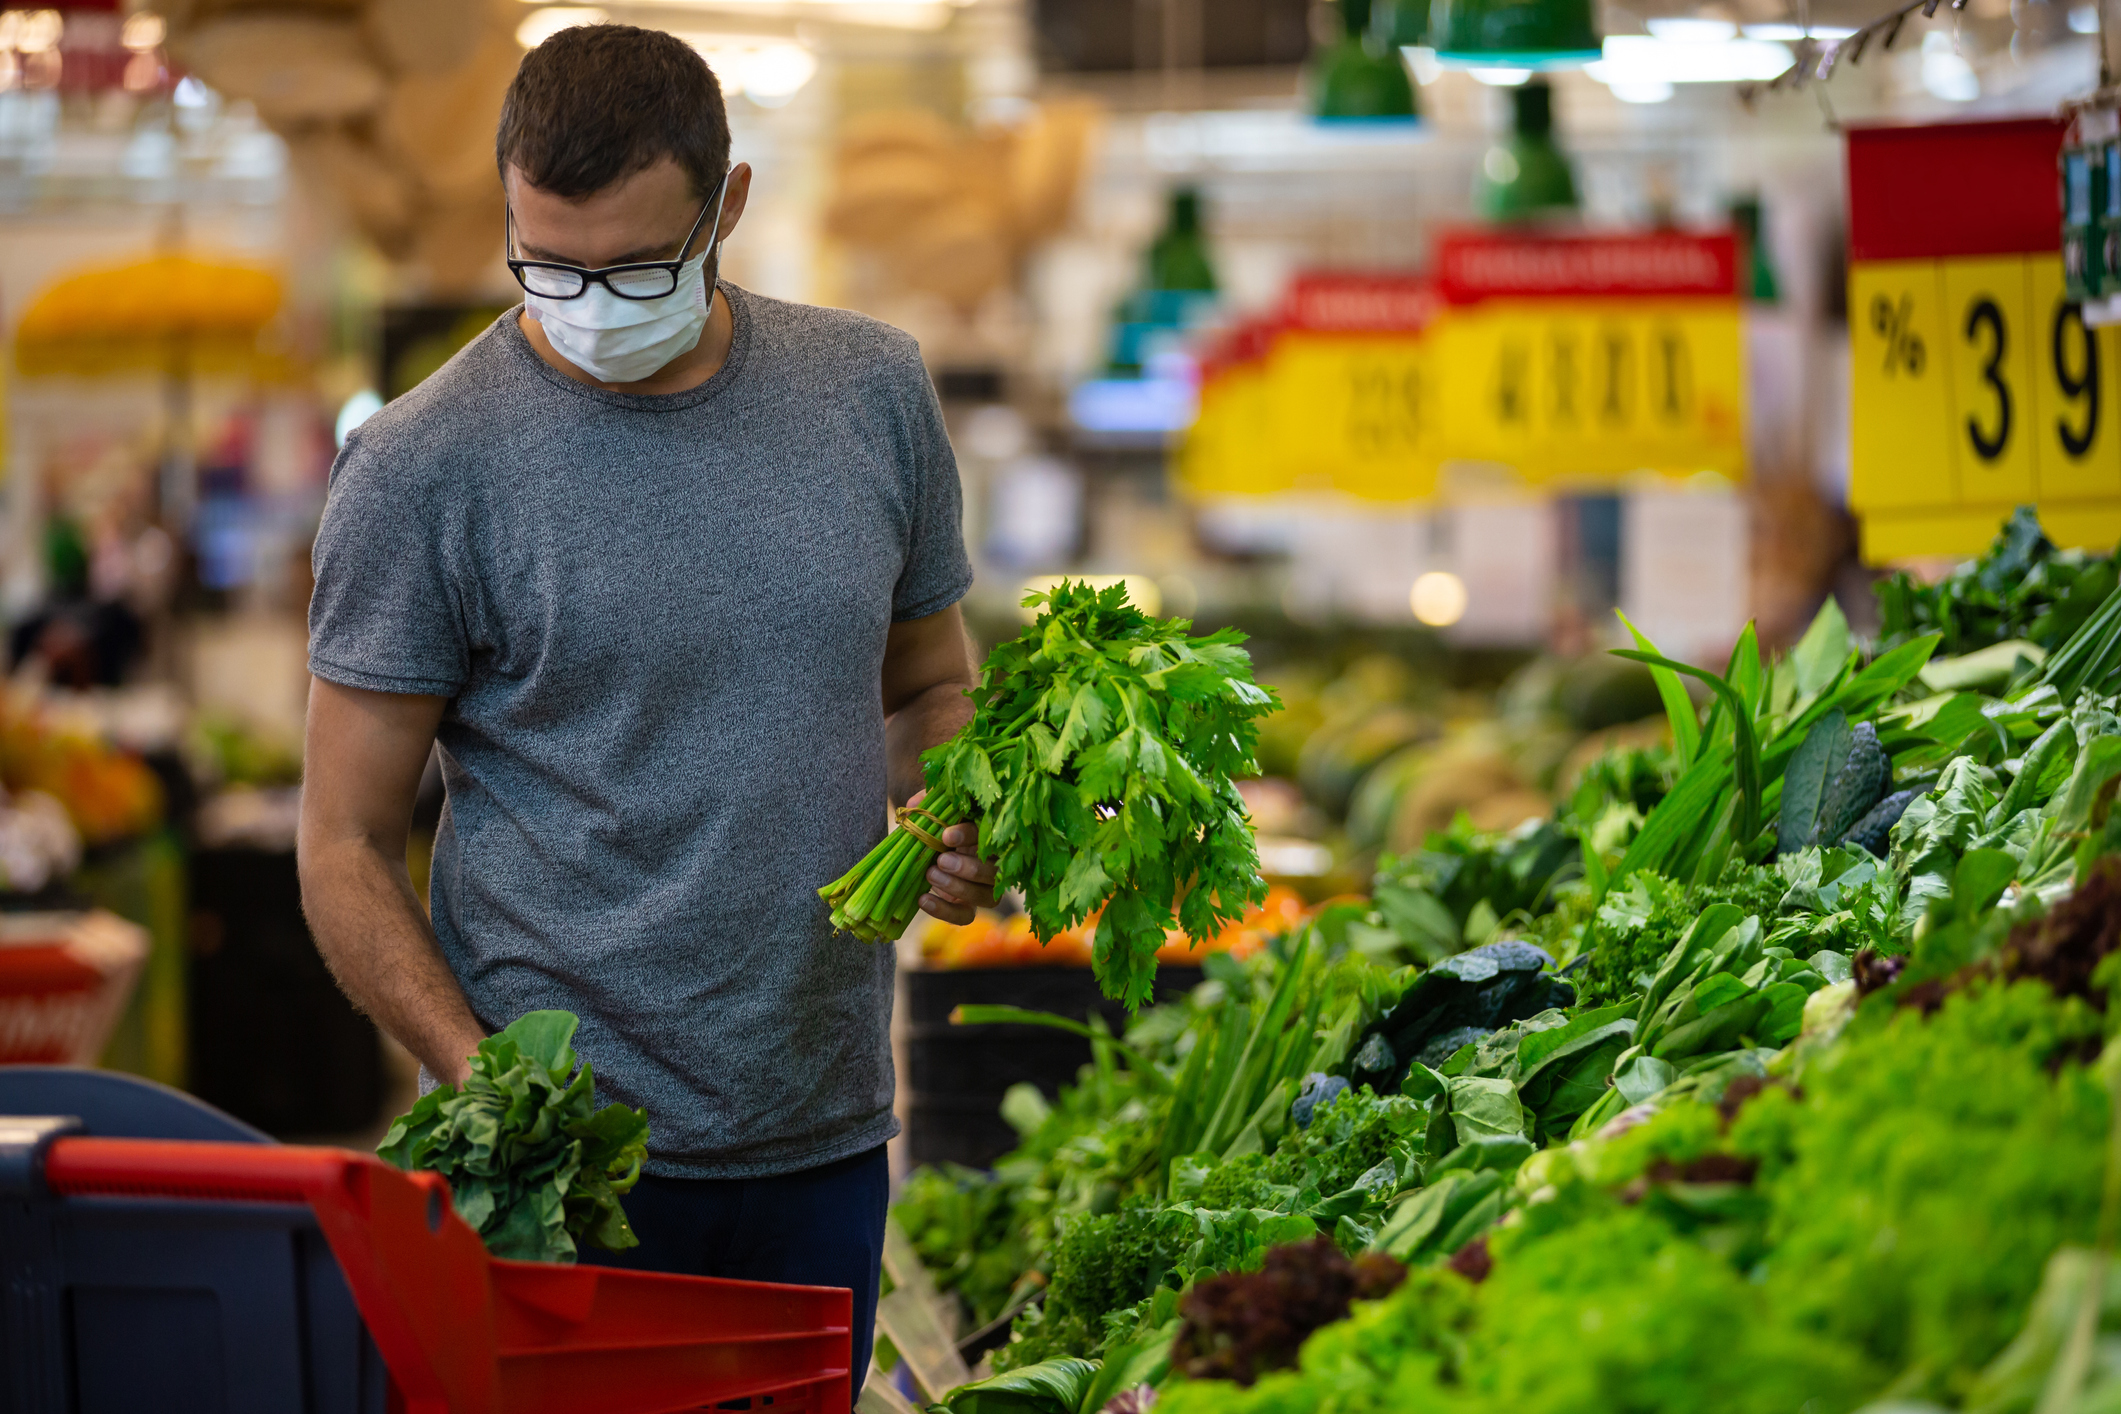 神色紧张的男子在超市或商店购买杂货时戴着可抵御冠状病毒的口罩 - 健康、安全和大流行的概念 - 为防止 covid-19病毒传播而戴上防护性口罩的年轻人正在堆存食物